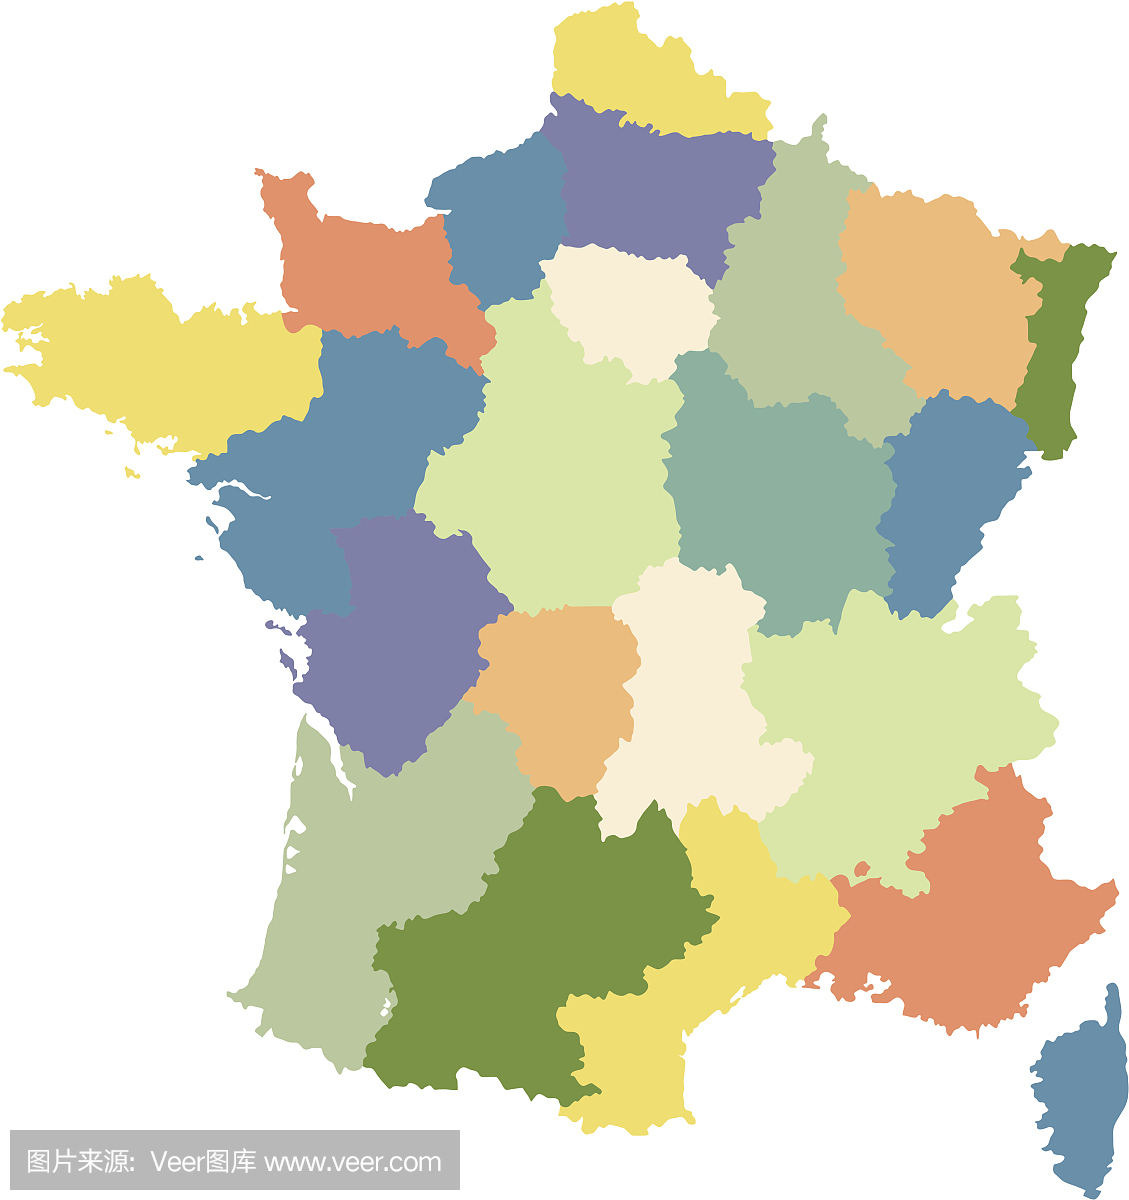 法国地图分为地区